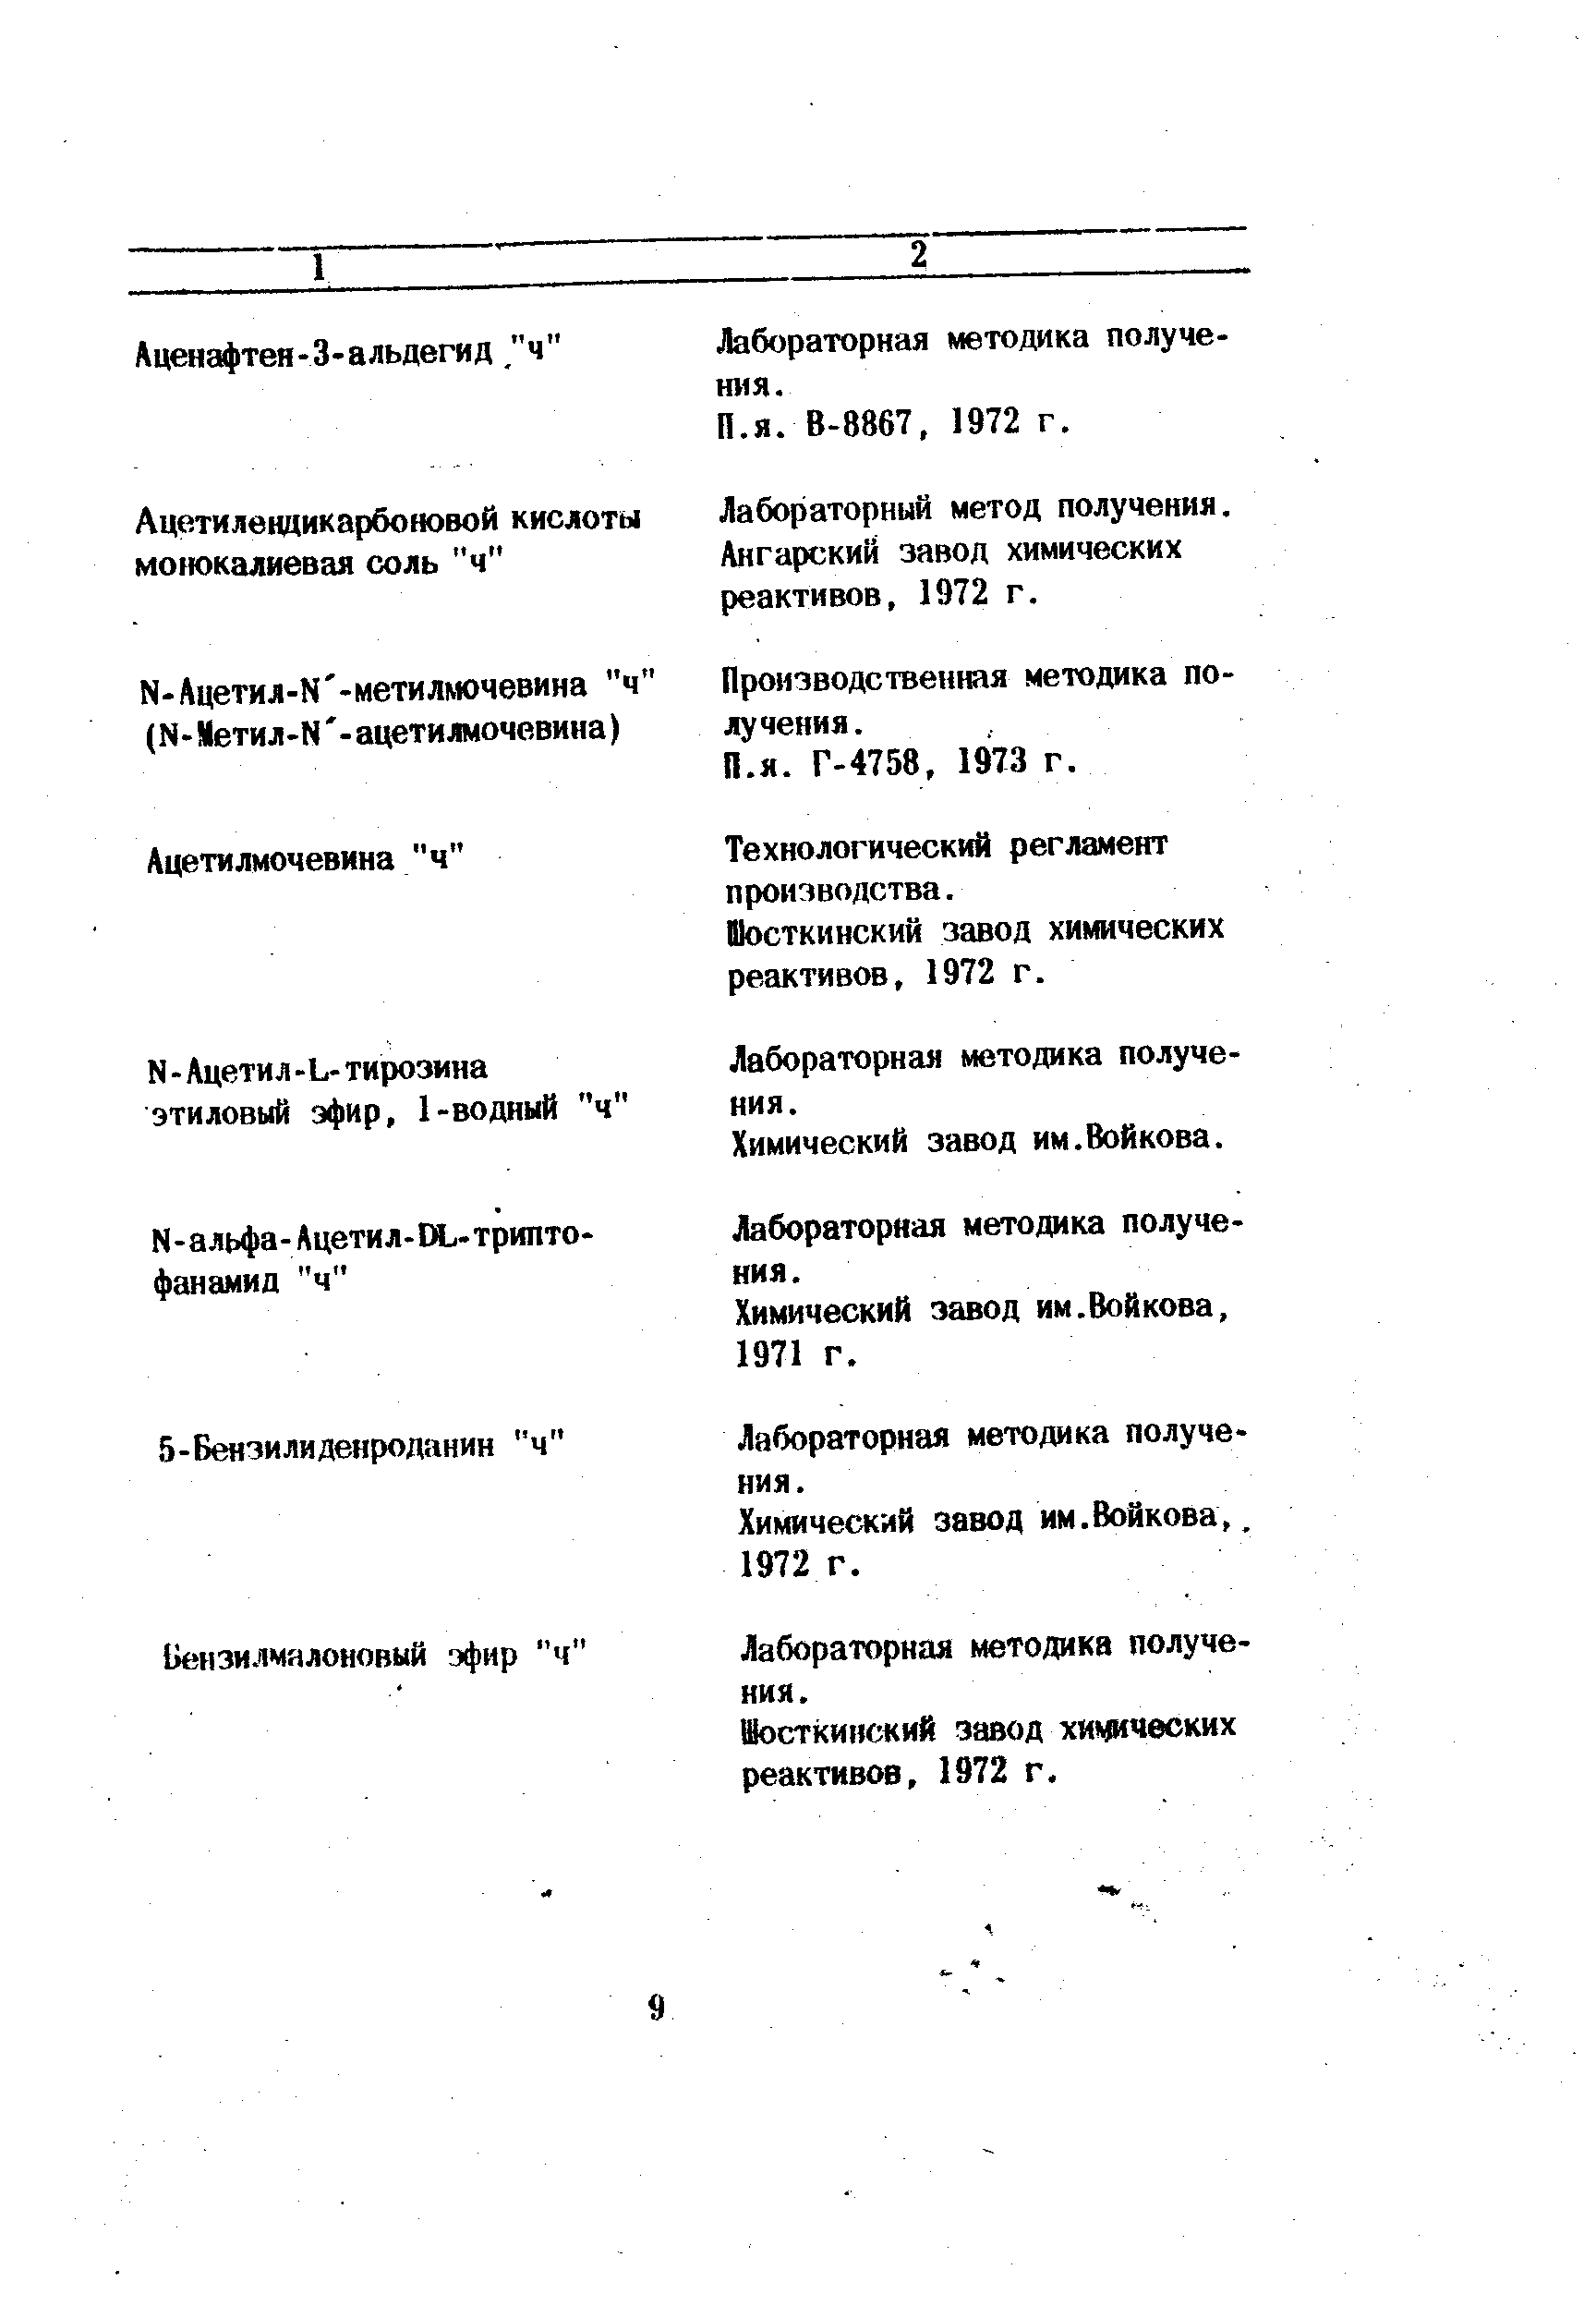 Лабораторный метод получения. Ангарский завод химических реактивов, 1972 г.